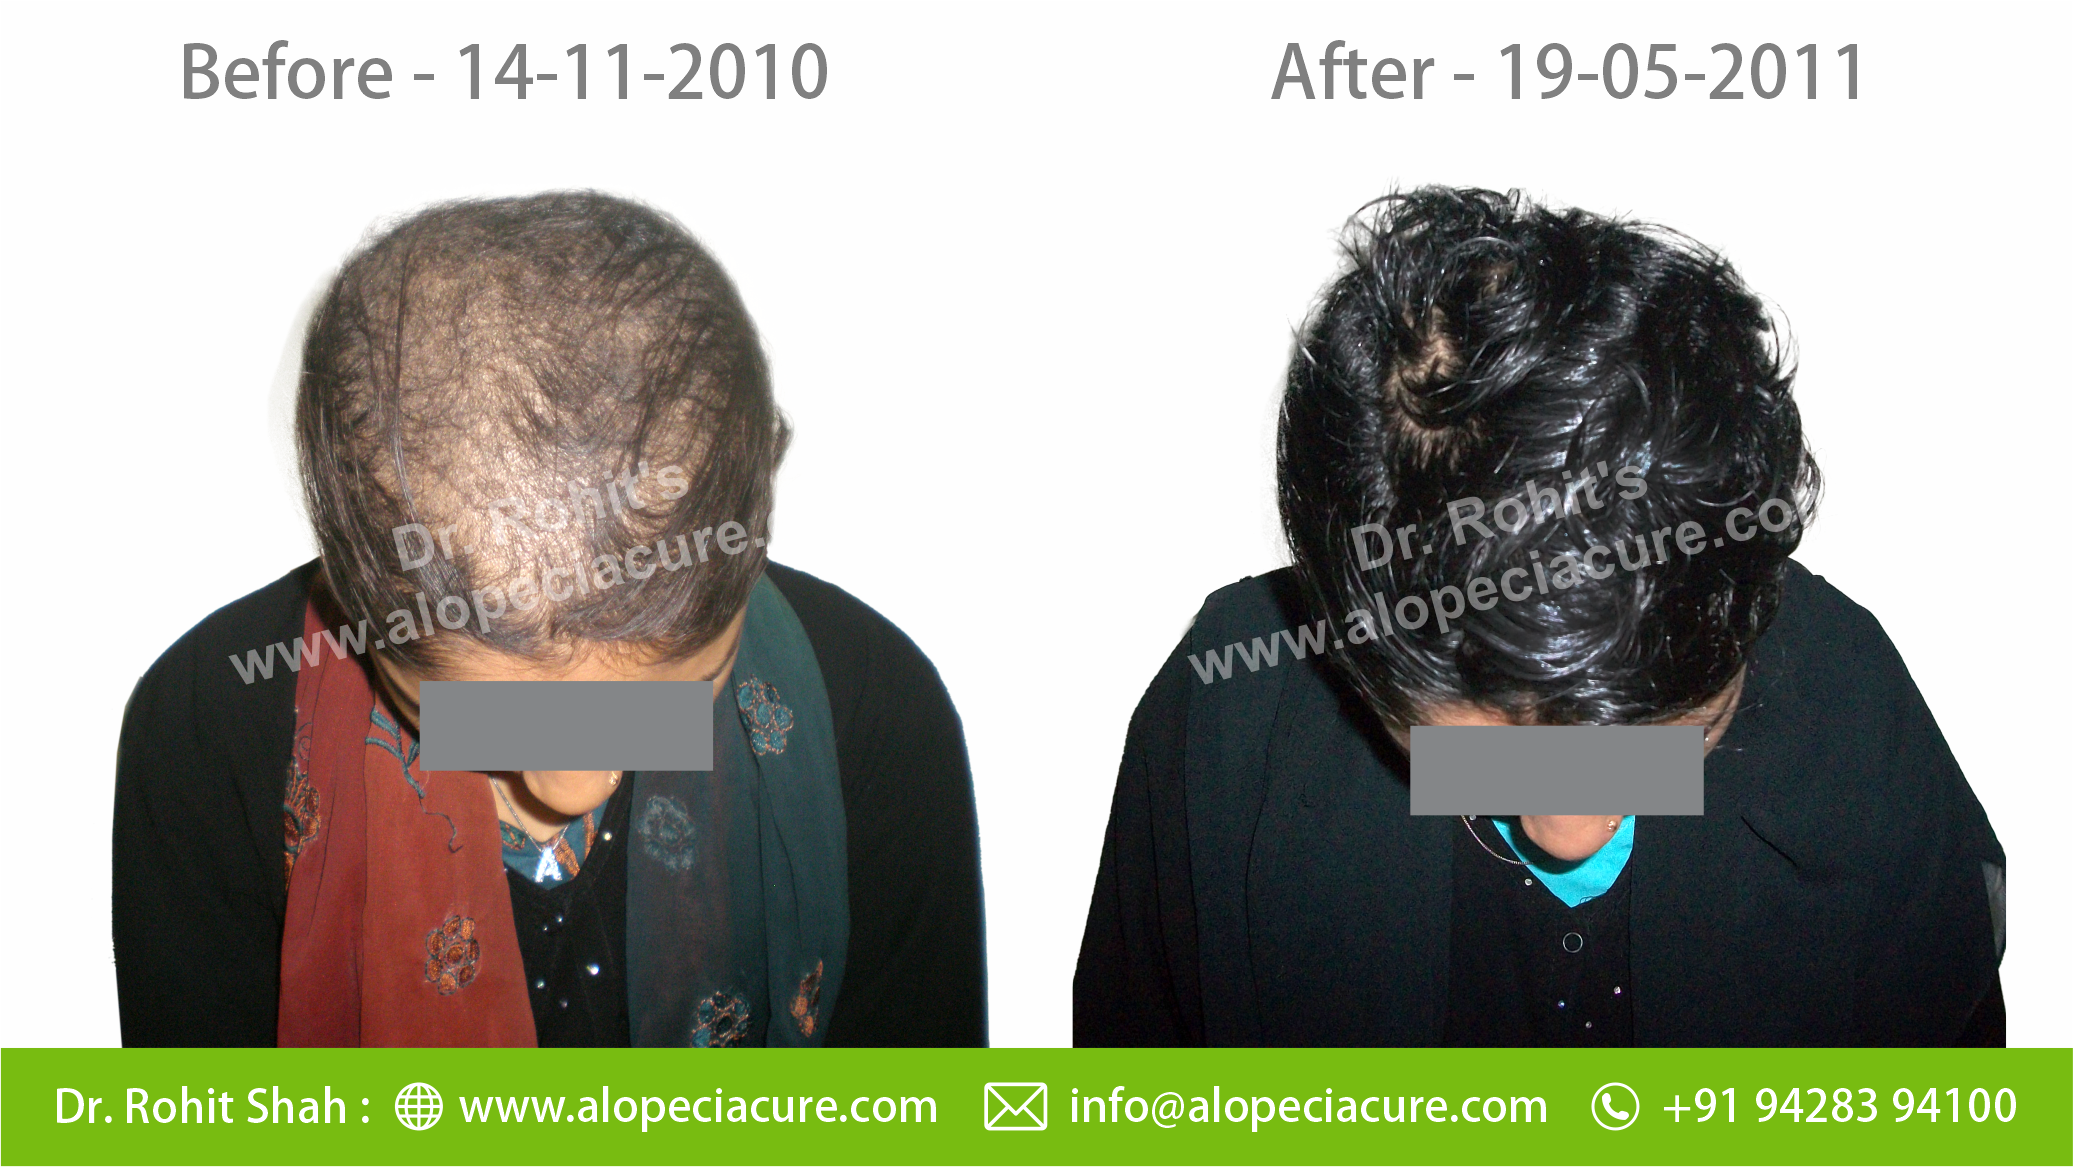 tractional alopecia treatment